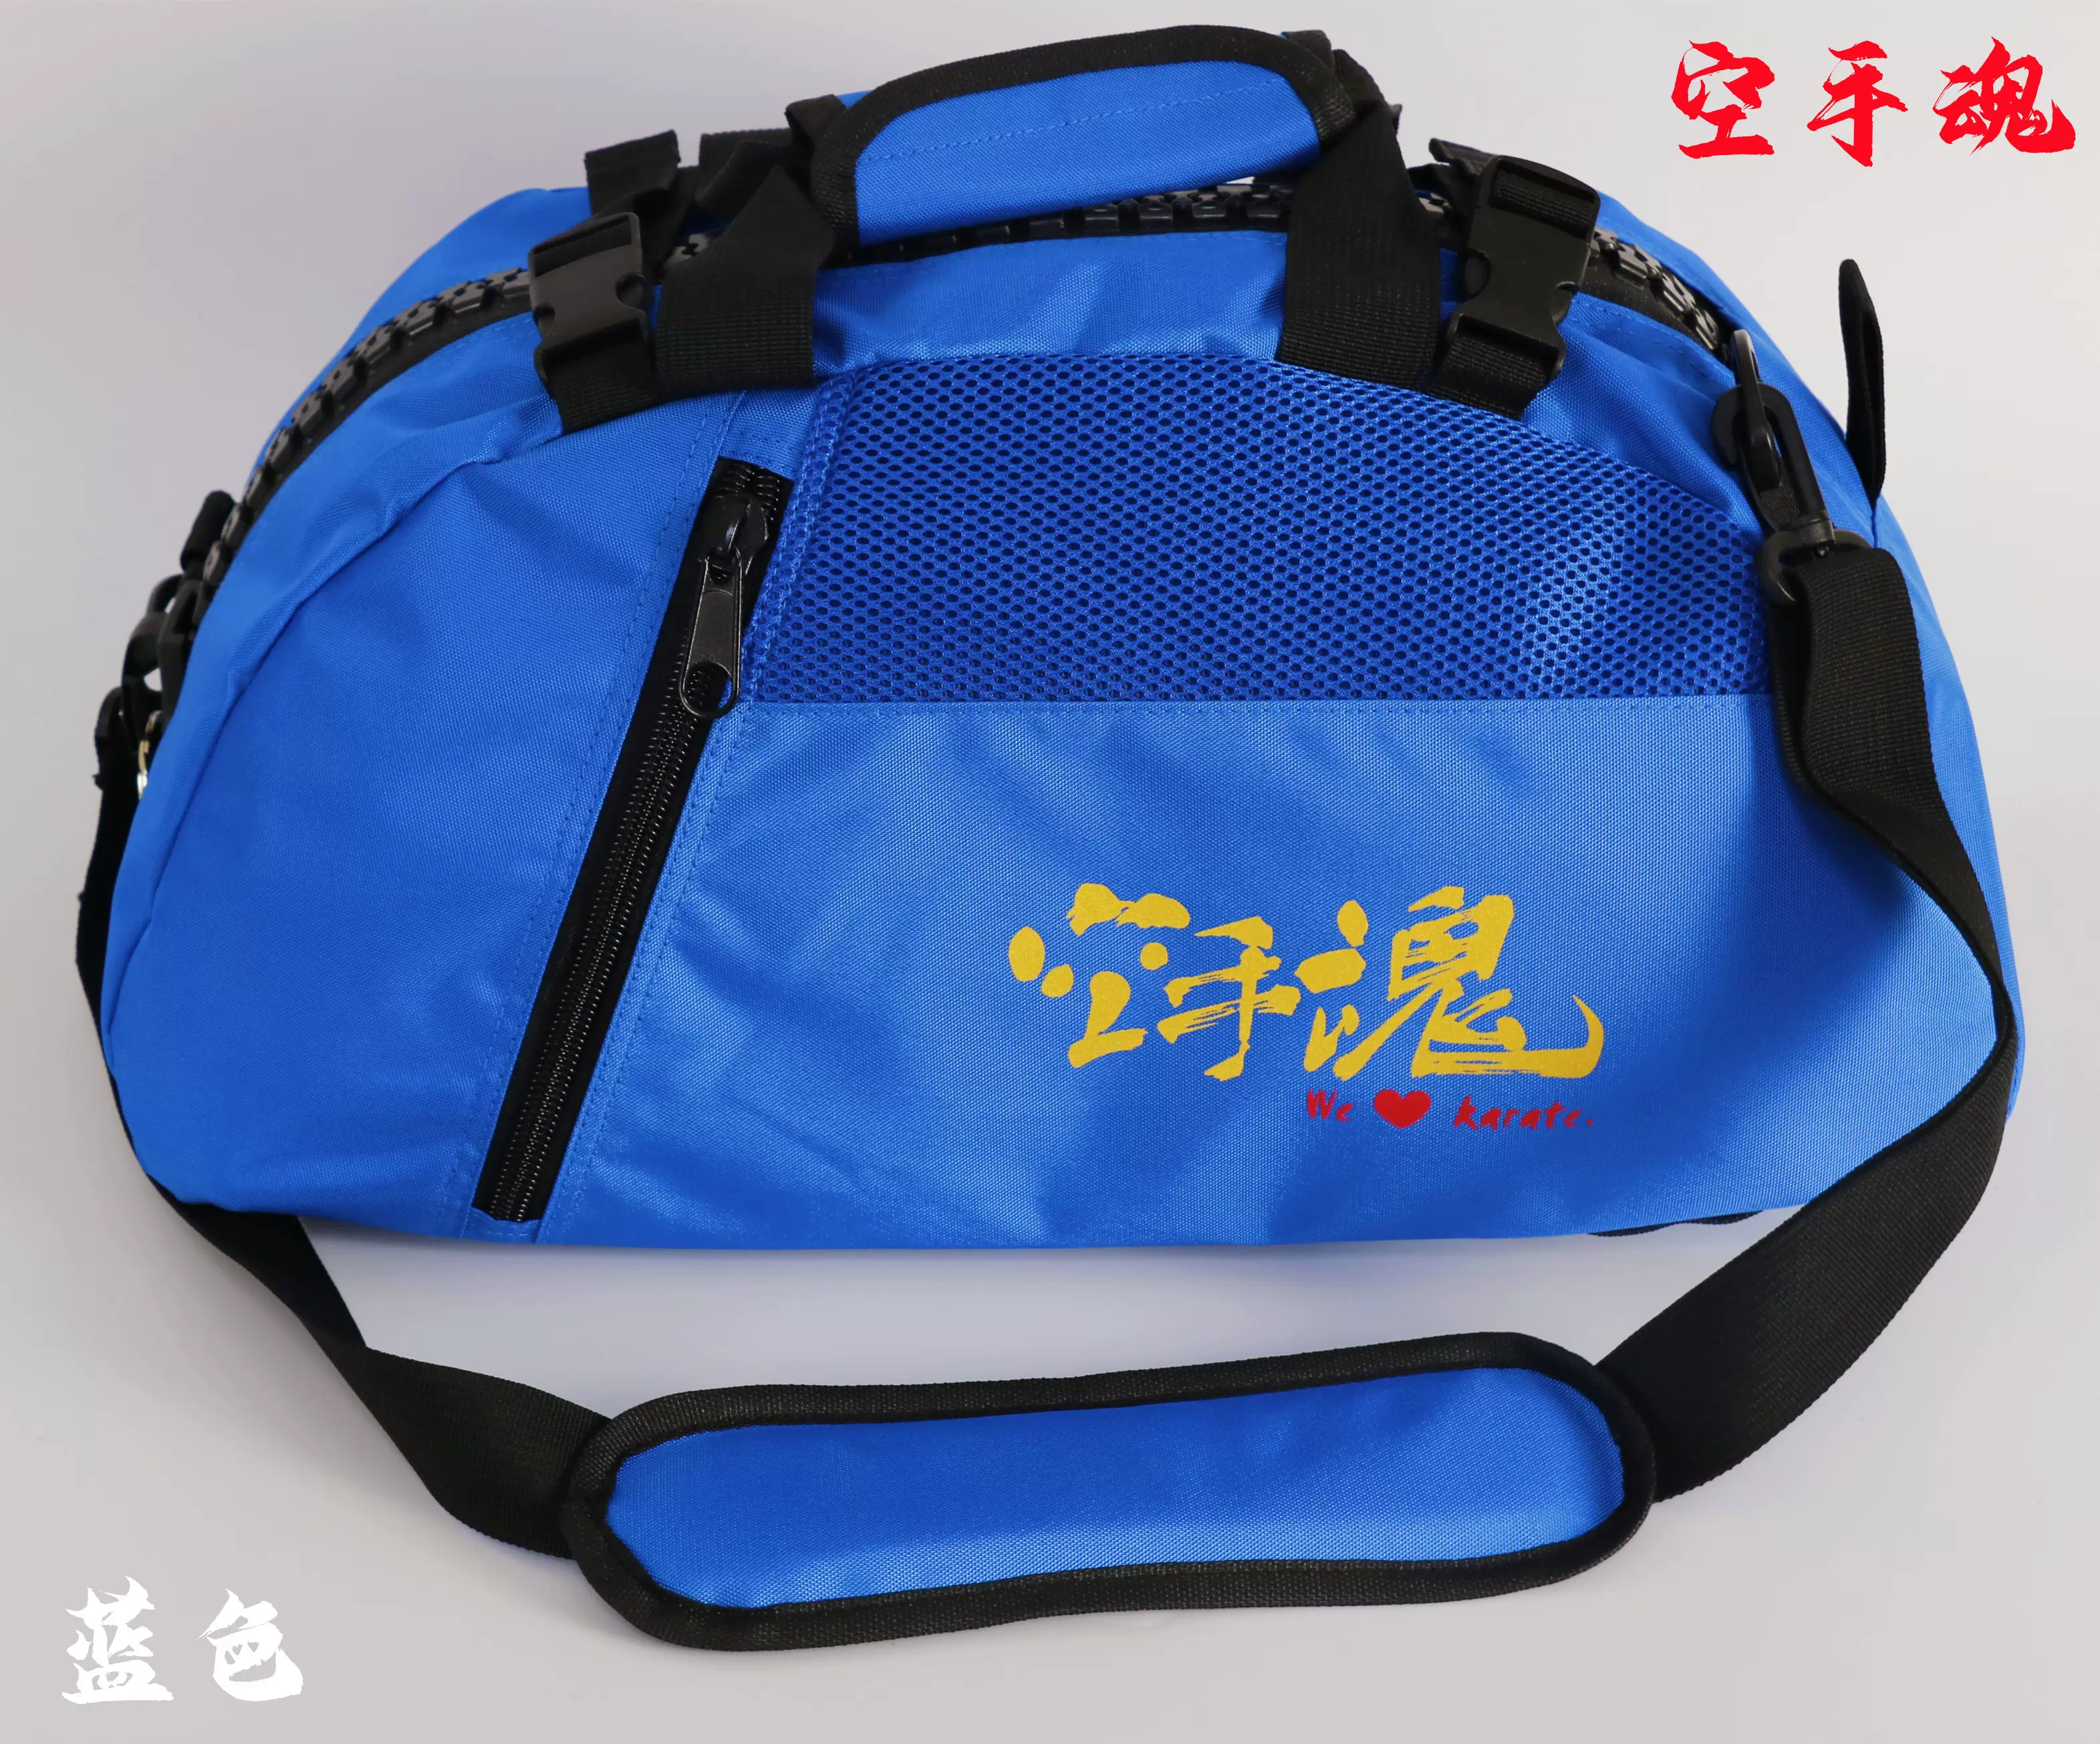 〈空手魂&空手道〉印字小號空手道裝備袋*長50Ｘ寬26Ｘ高24-Taobao